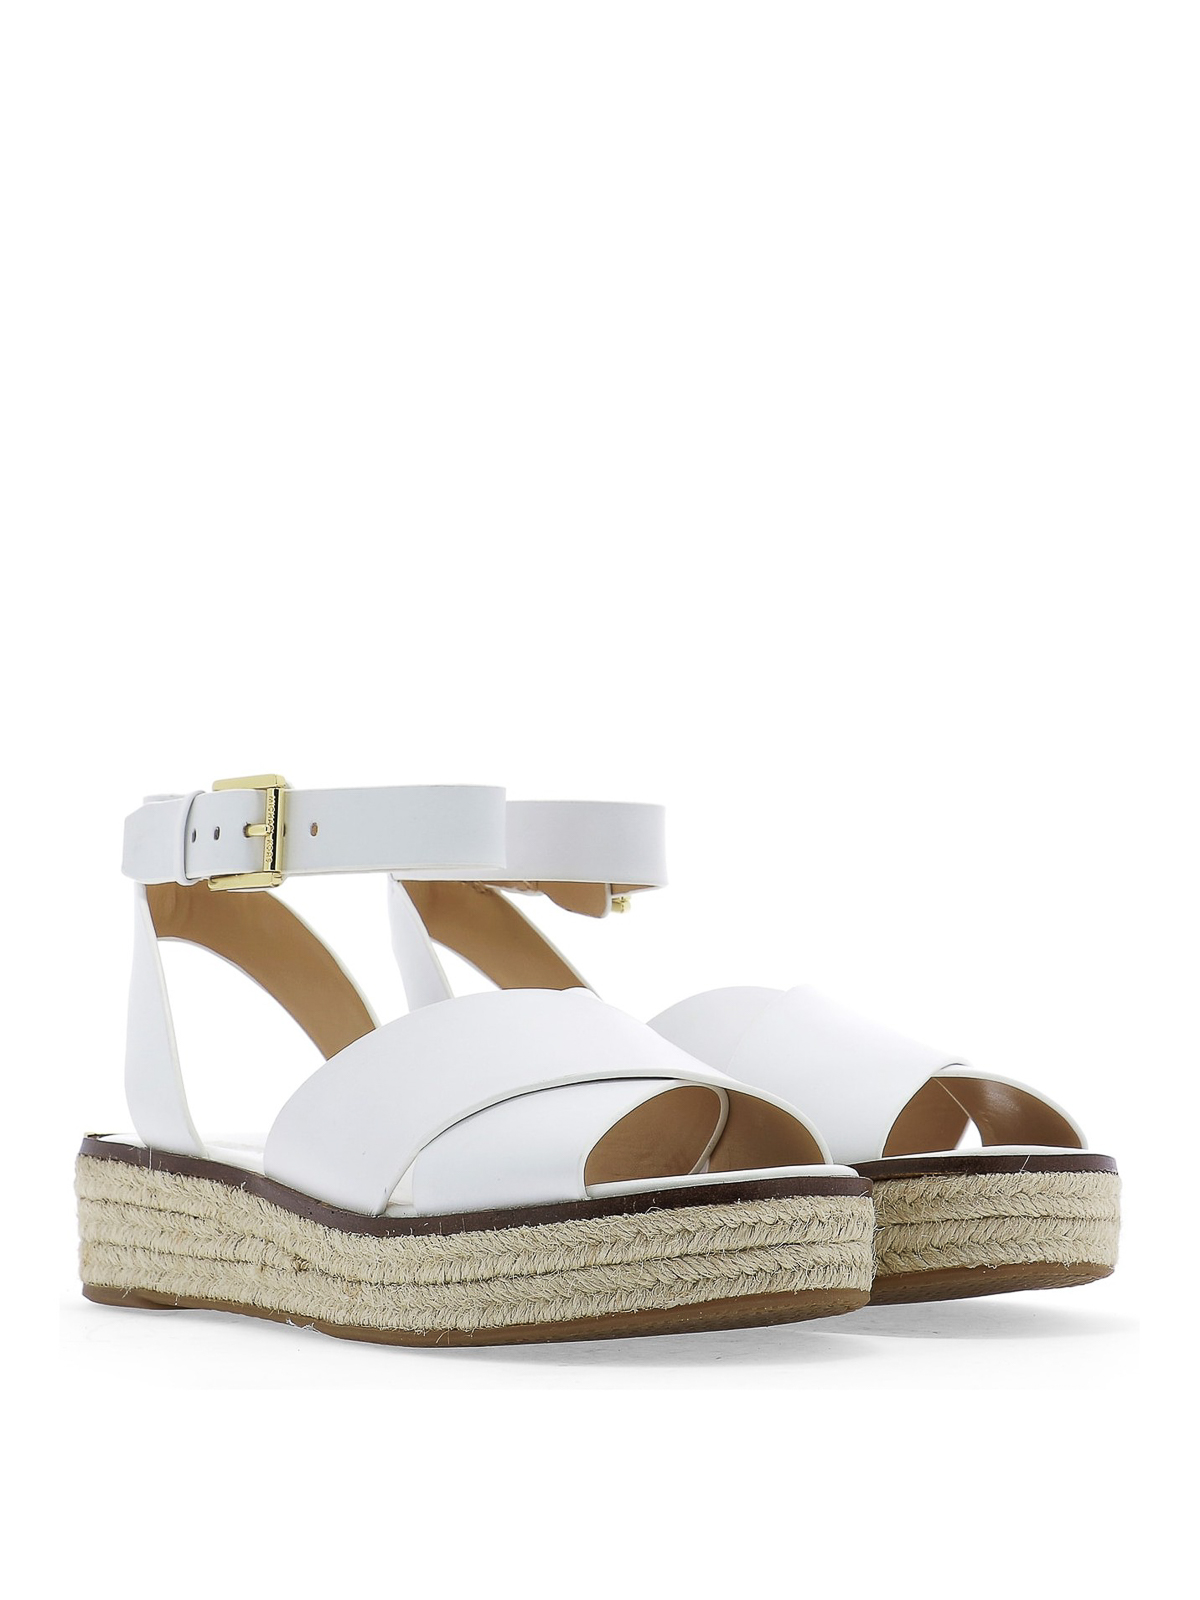 Sandals Michael Kors - Abbott white sandals - 40S9ABFA1L085 